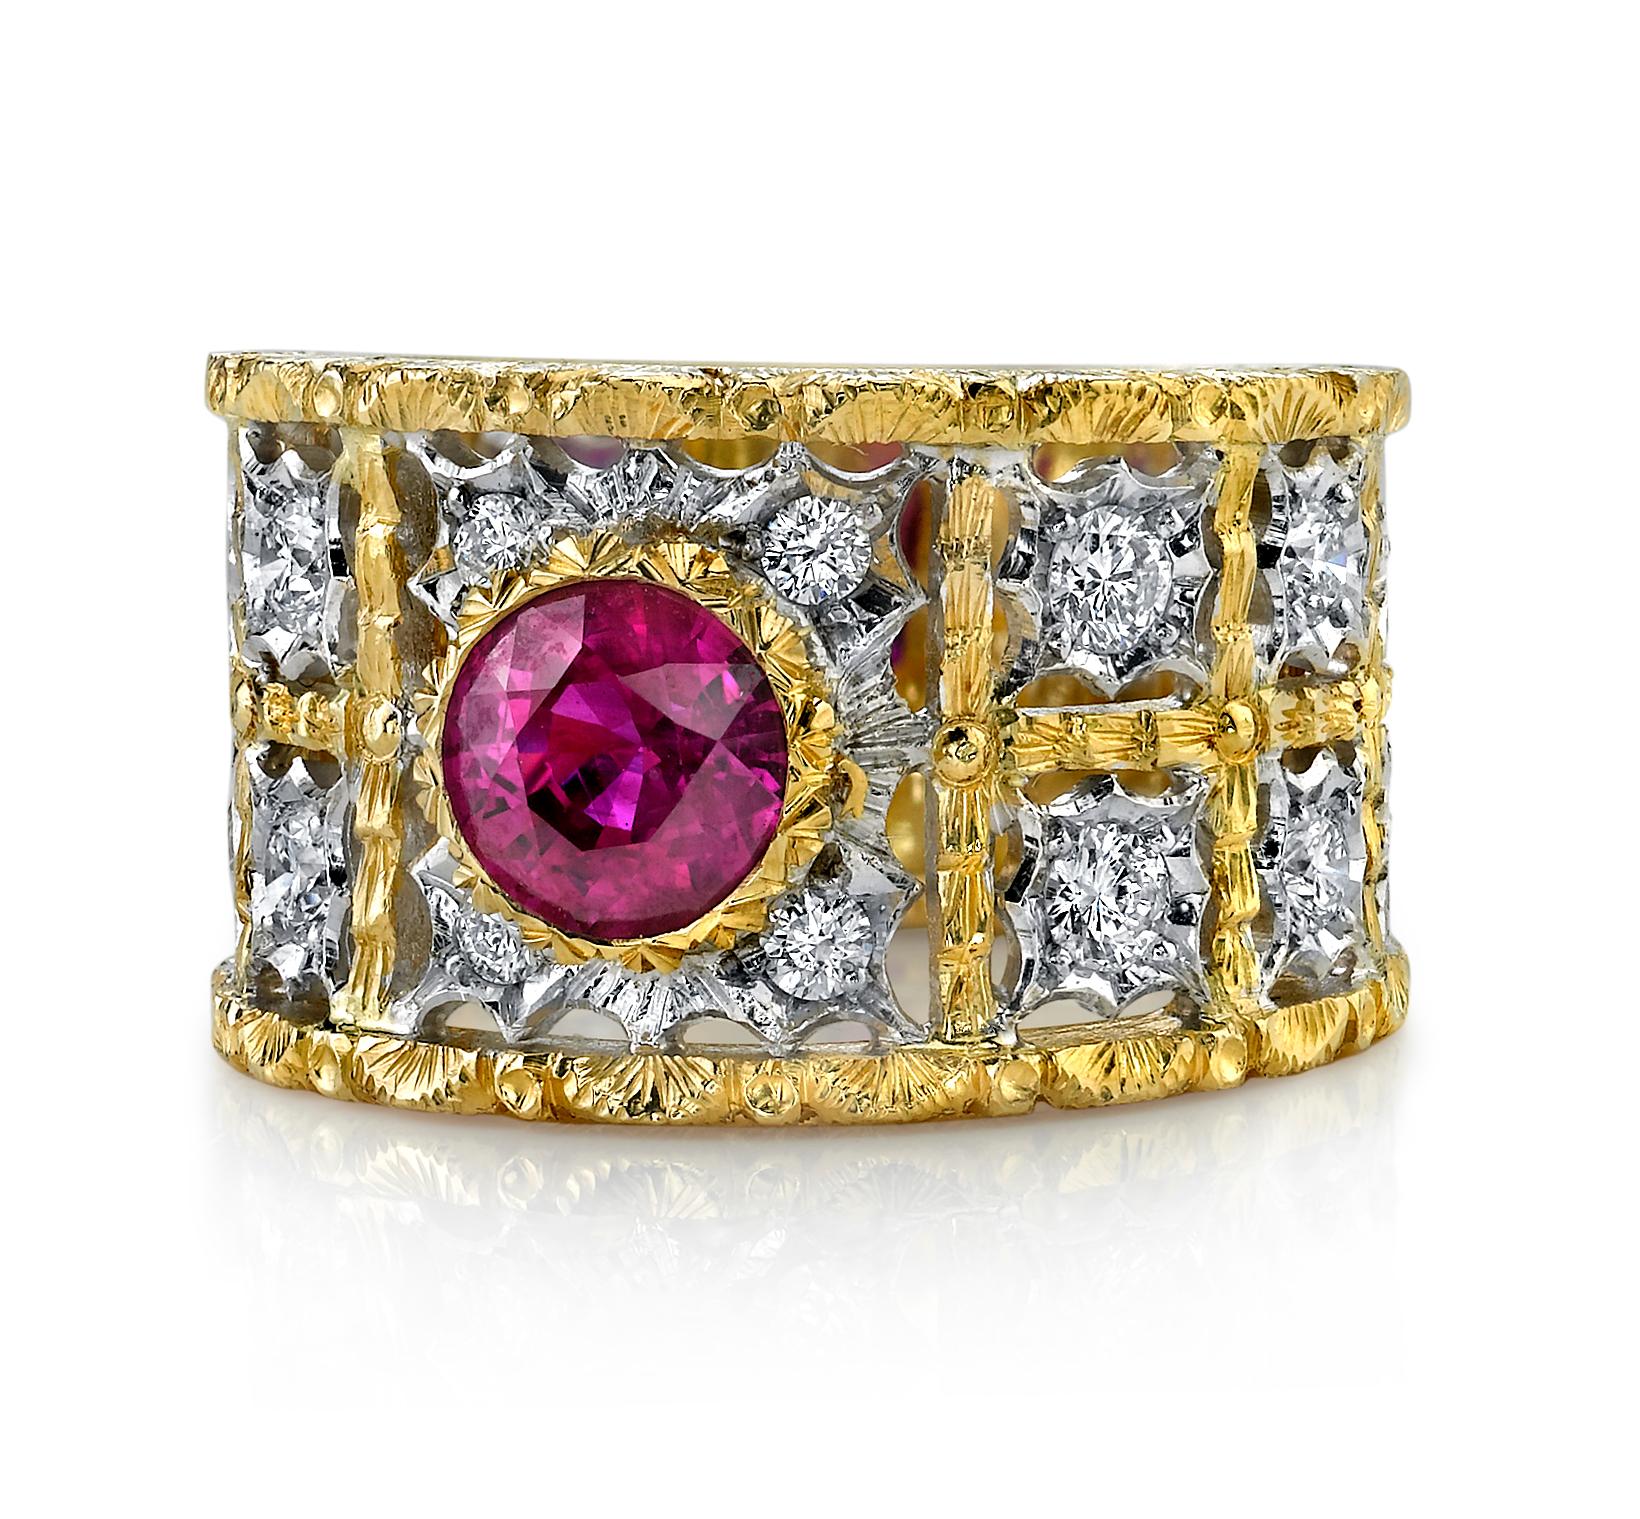 Ce spectaculaire bracelet en rubis et diamants a toutes les caractéristiques d'un bijou de famille intemporel. Fabriquée en Italie en or jaune et blanc 18 carats, cette bague est ornée d'un rubis de couleur birmane d'un poids de 1,68 carat, serti